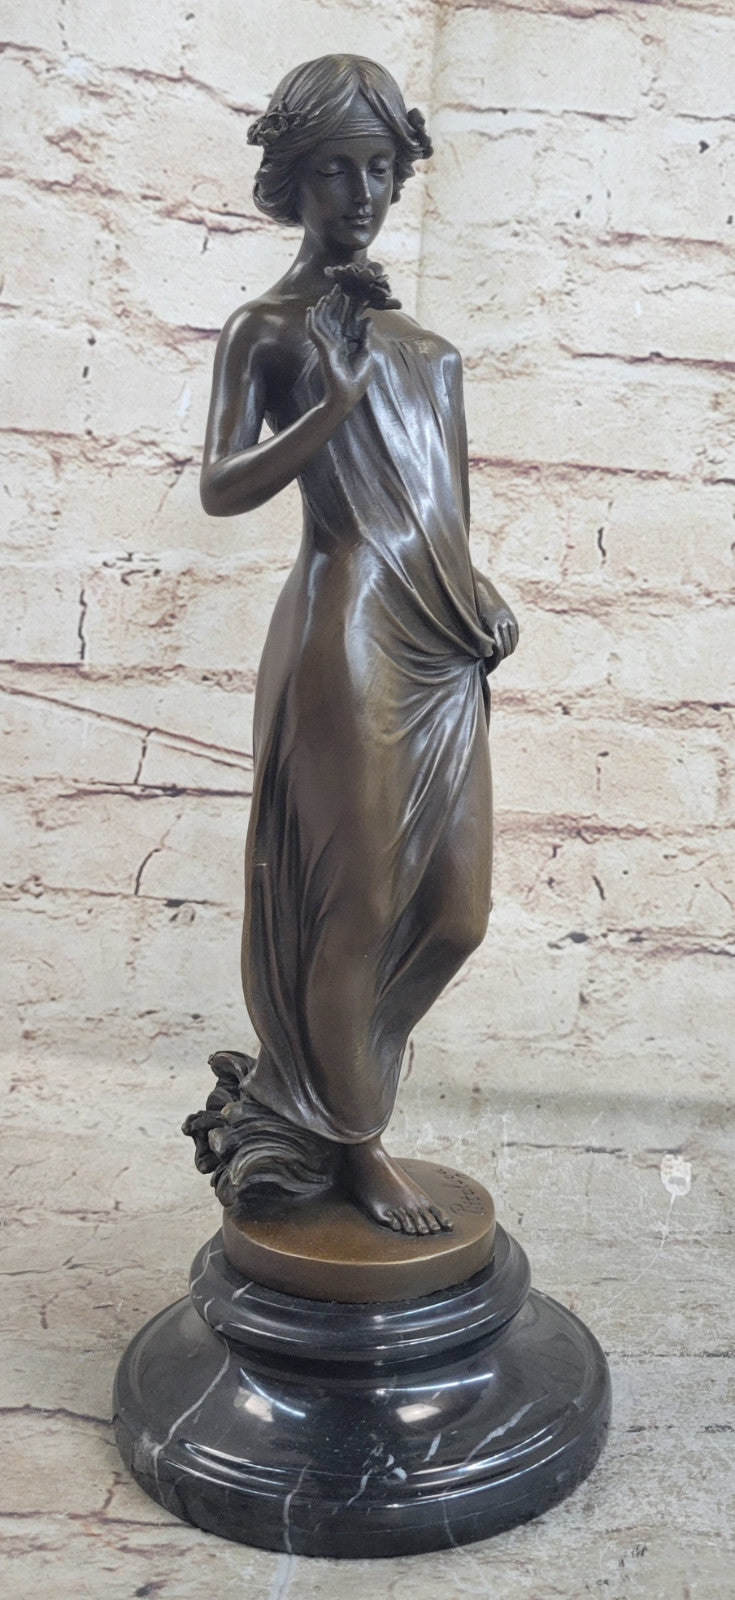 Uique Hot Cast Nude Mother Nature Bronze Sculpture Figure Statue Figurine Art